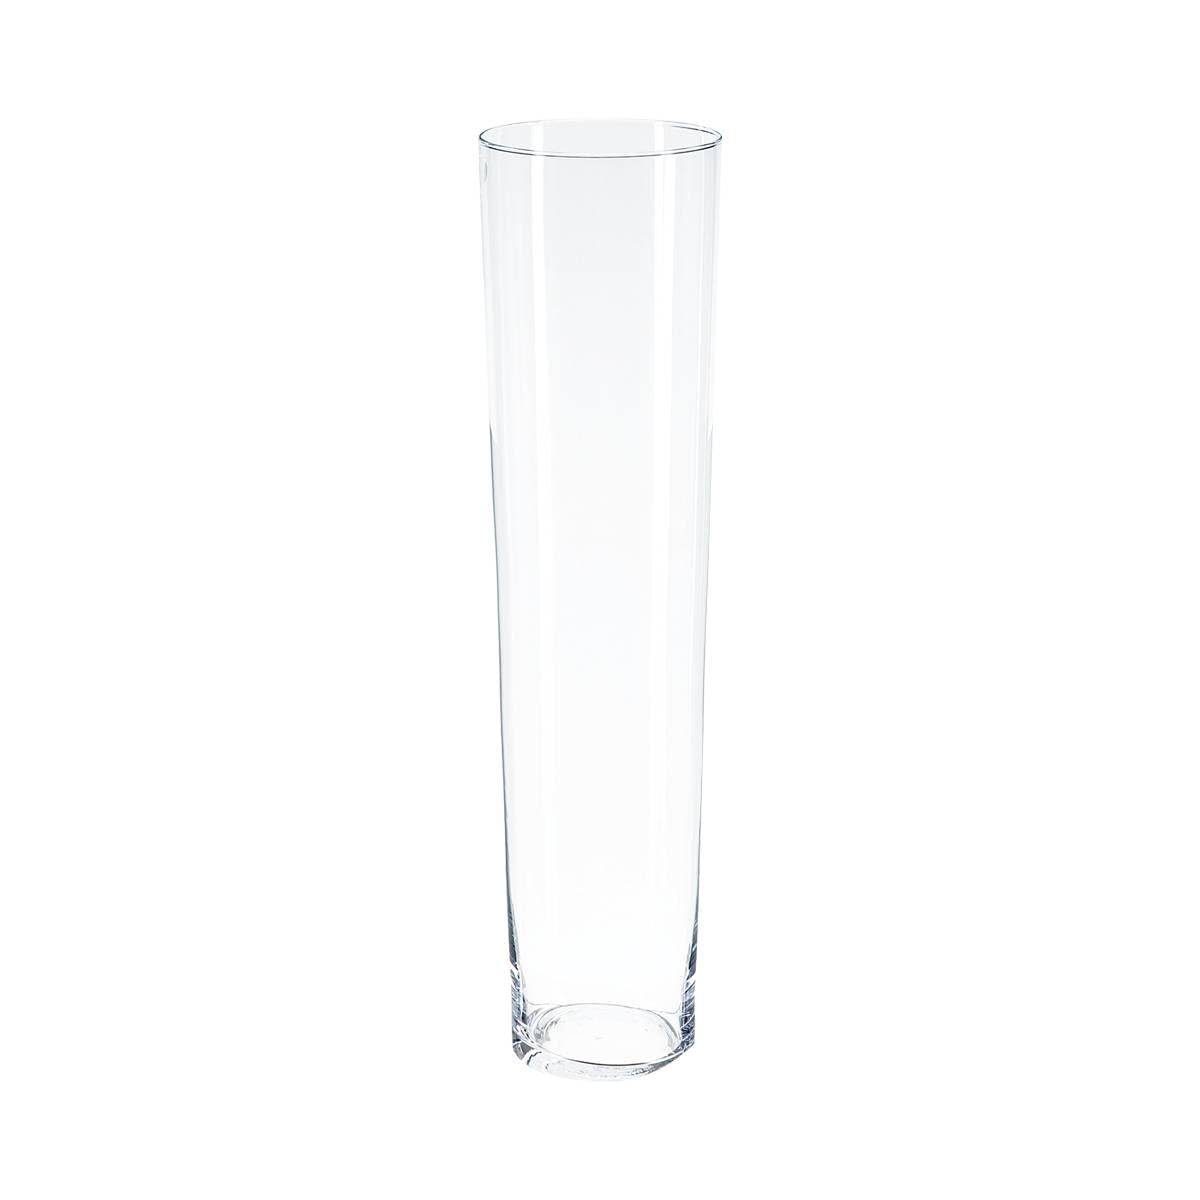 Magnifique Vase Conique - Verre - H70 cm - Atmosphera créateur d´intérieur yUzIgthEe Vente chaude